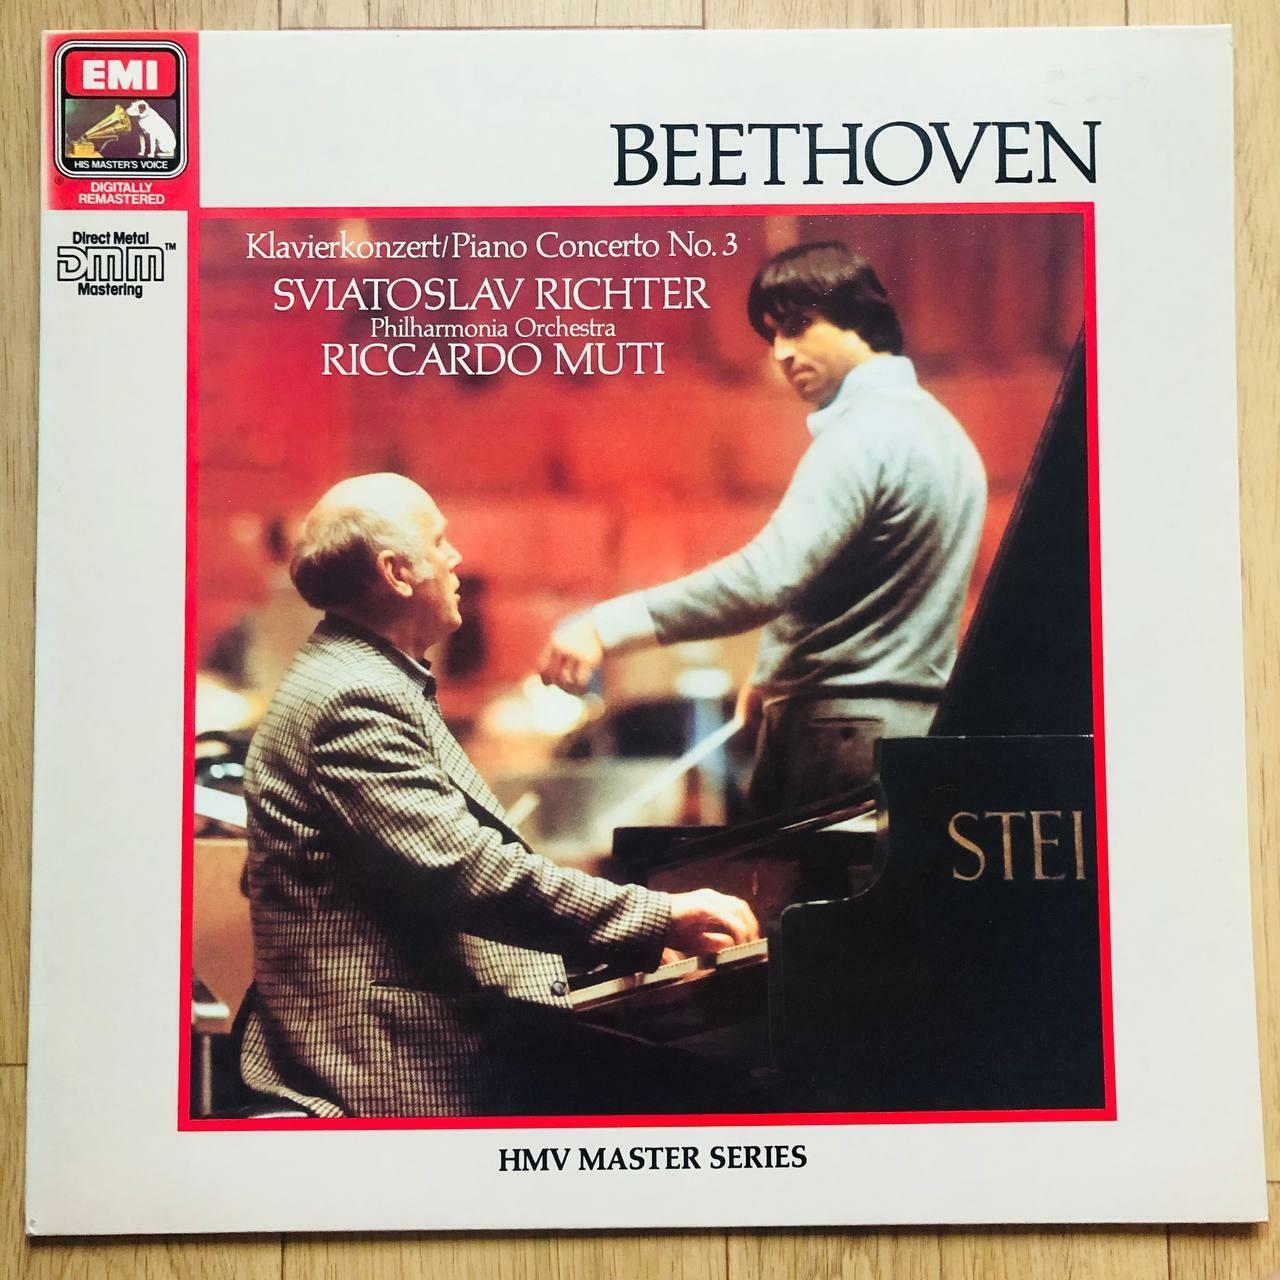 [중고] 수입LP] 베토벤 : 피아노 협주곡 3번, 안단테 파보리: 무티 (Riccardo Muti) ,리히터 (Sviatoslav Richter)